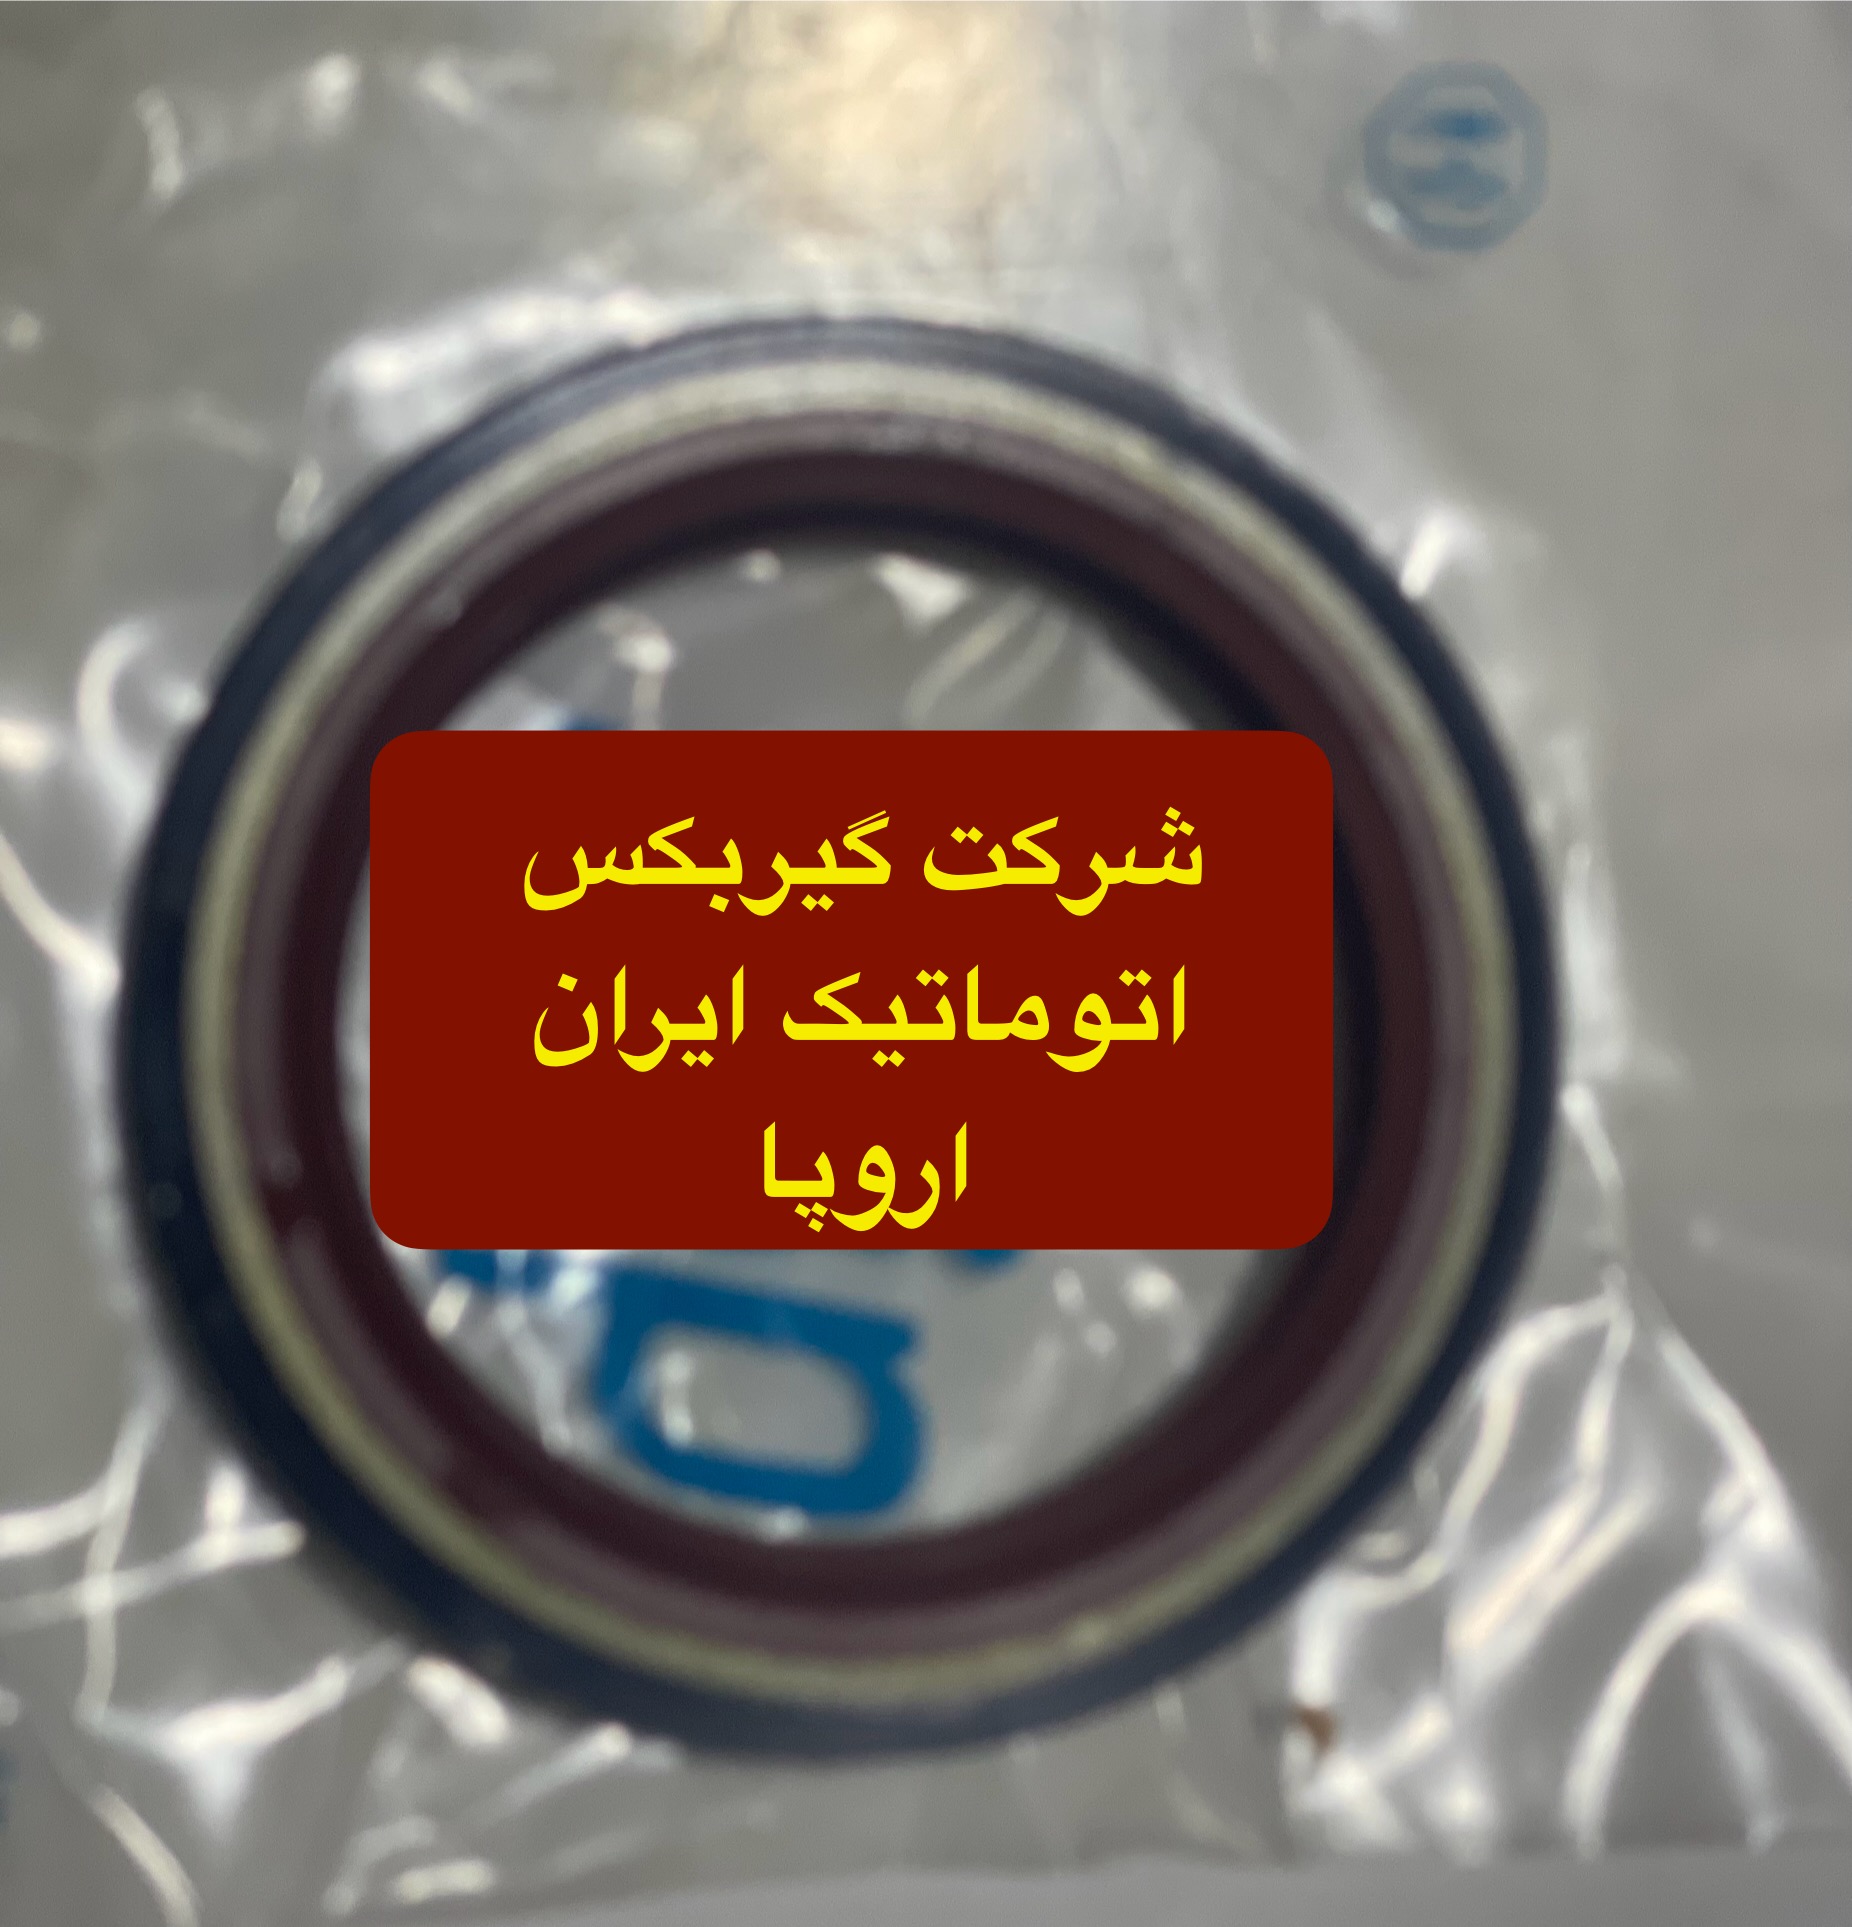 شرکت (تعمیرگاه) گیربکس اتوماتیک ایران اروپا فروش کاسه نمد اویل پمب گیربکس اتوماتیک پژو 407